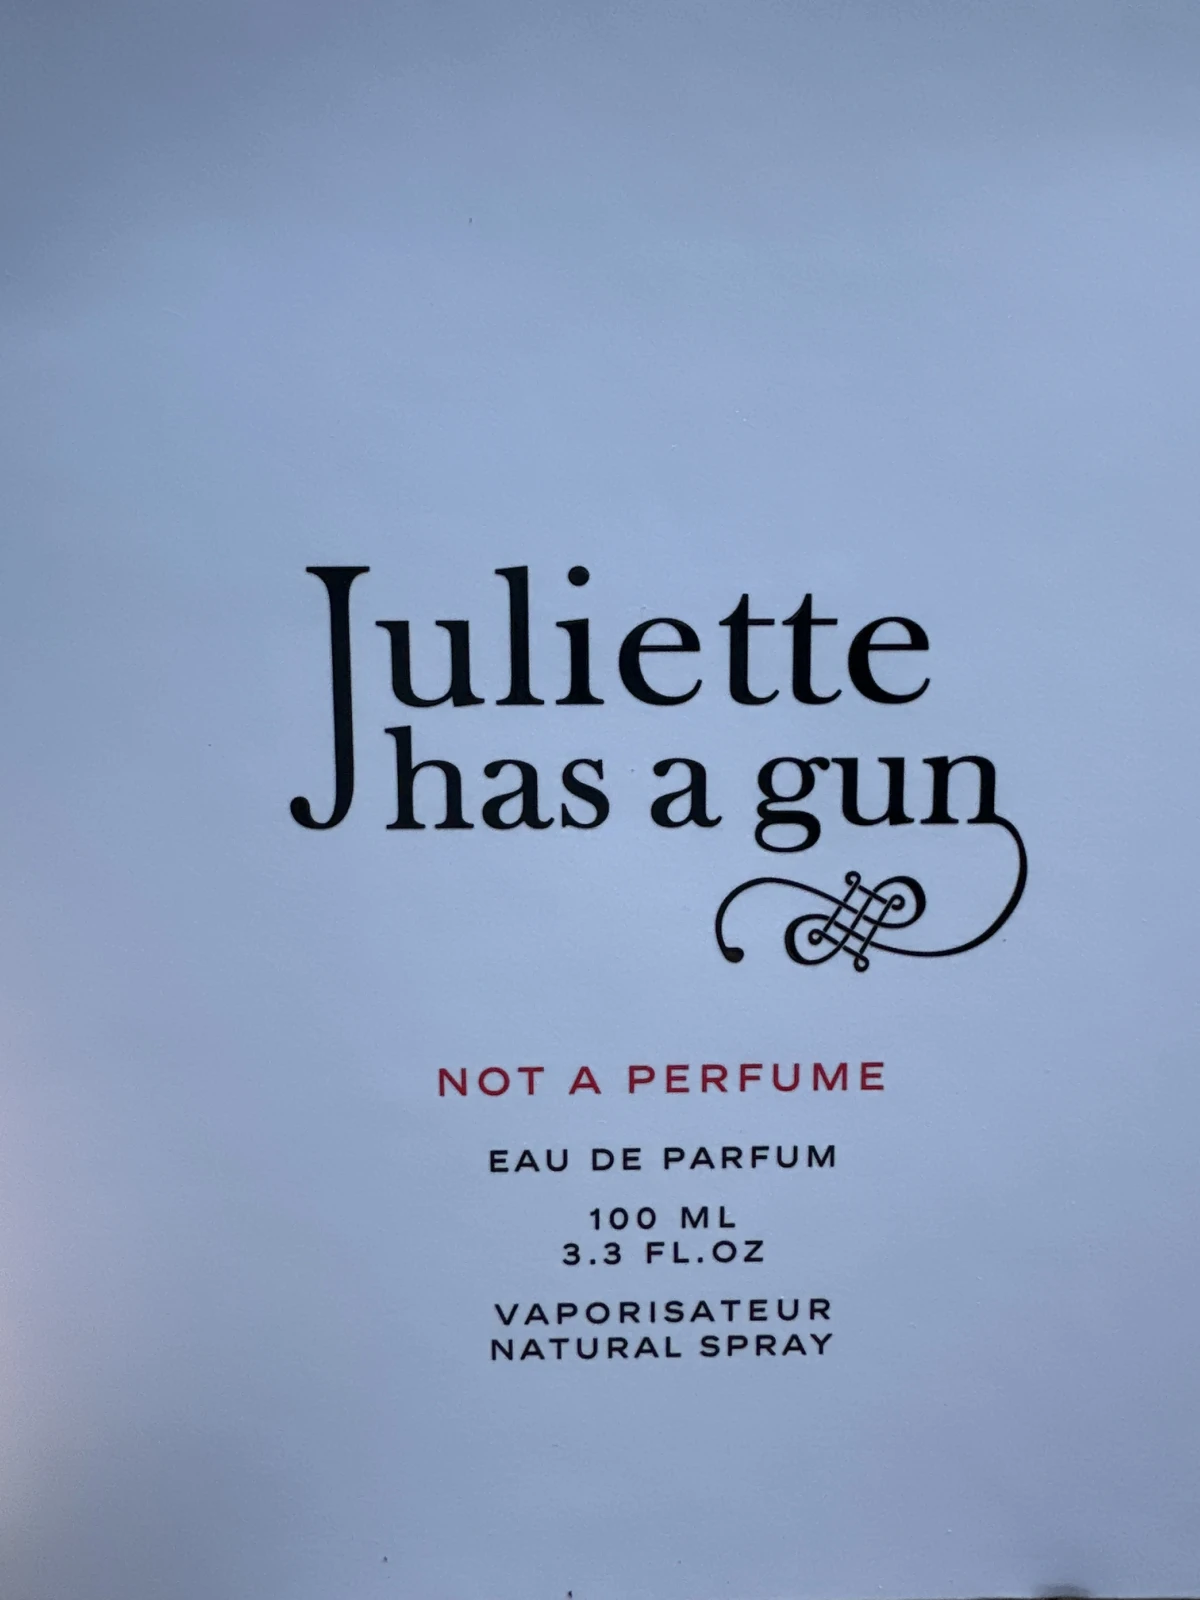 Damesparfum Juliette Has A Gun EDP 100 ml Not A Perfume - before review image